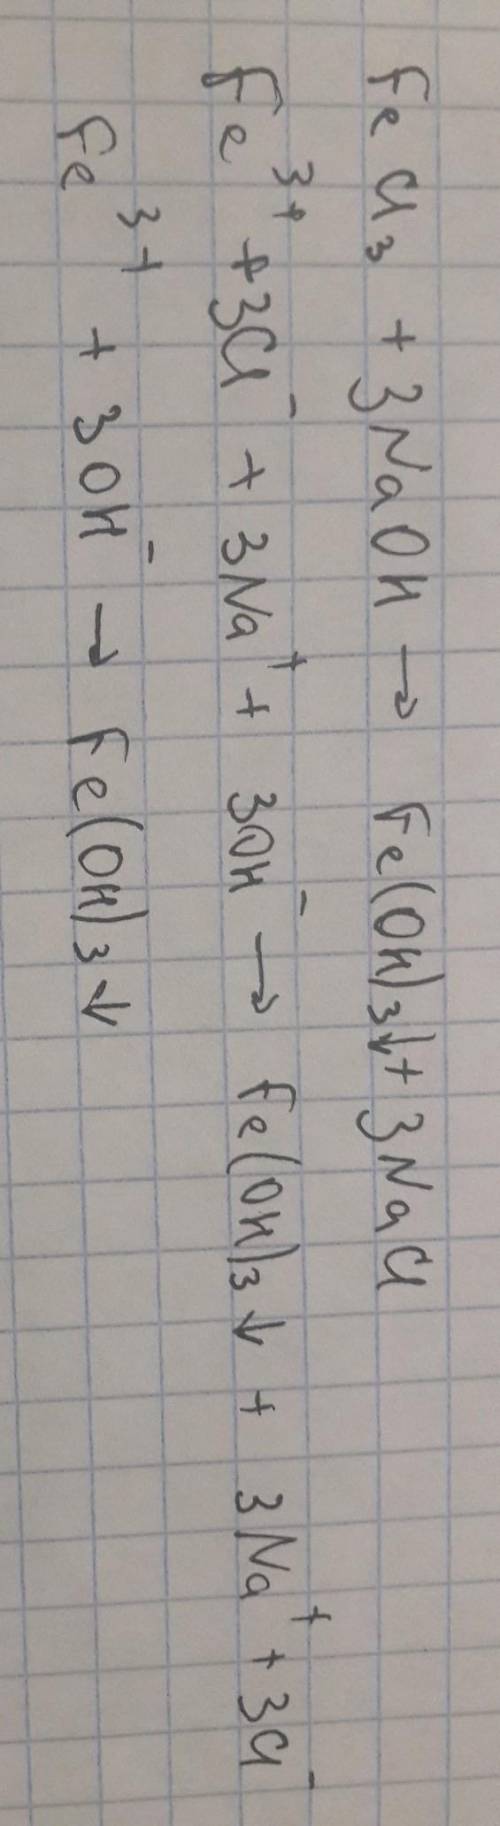 Молекулярное уравнение з к сокращенным ионным уравнениям допишите полное ионное уравне ние и подходя